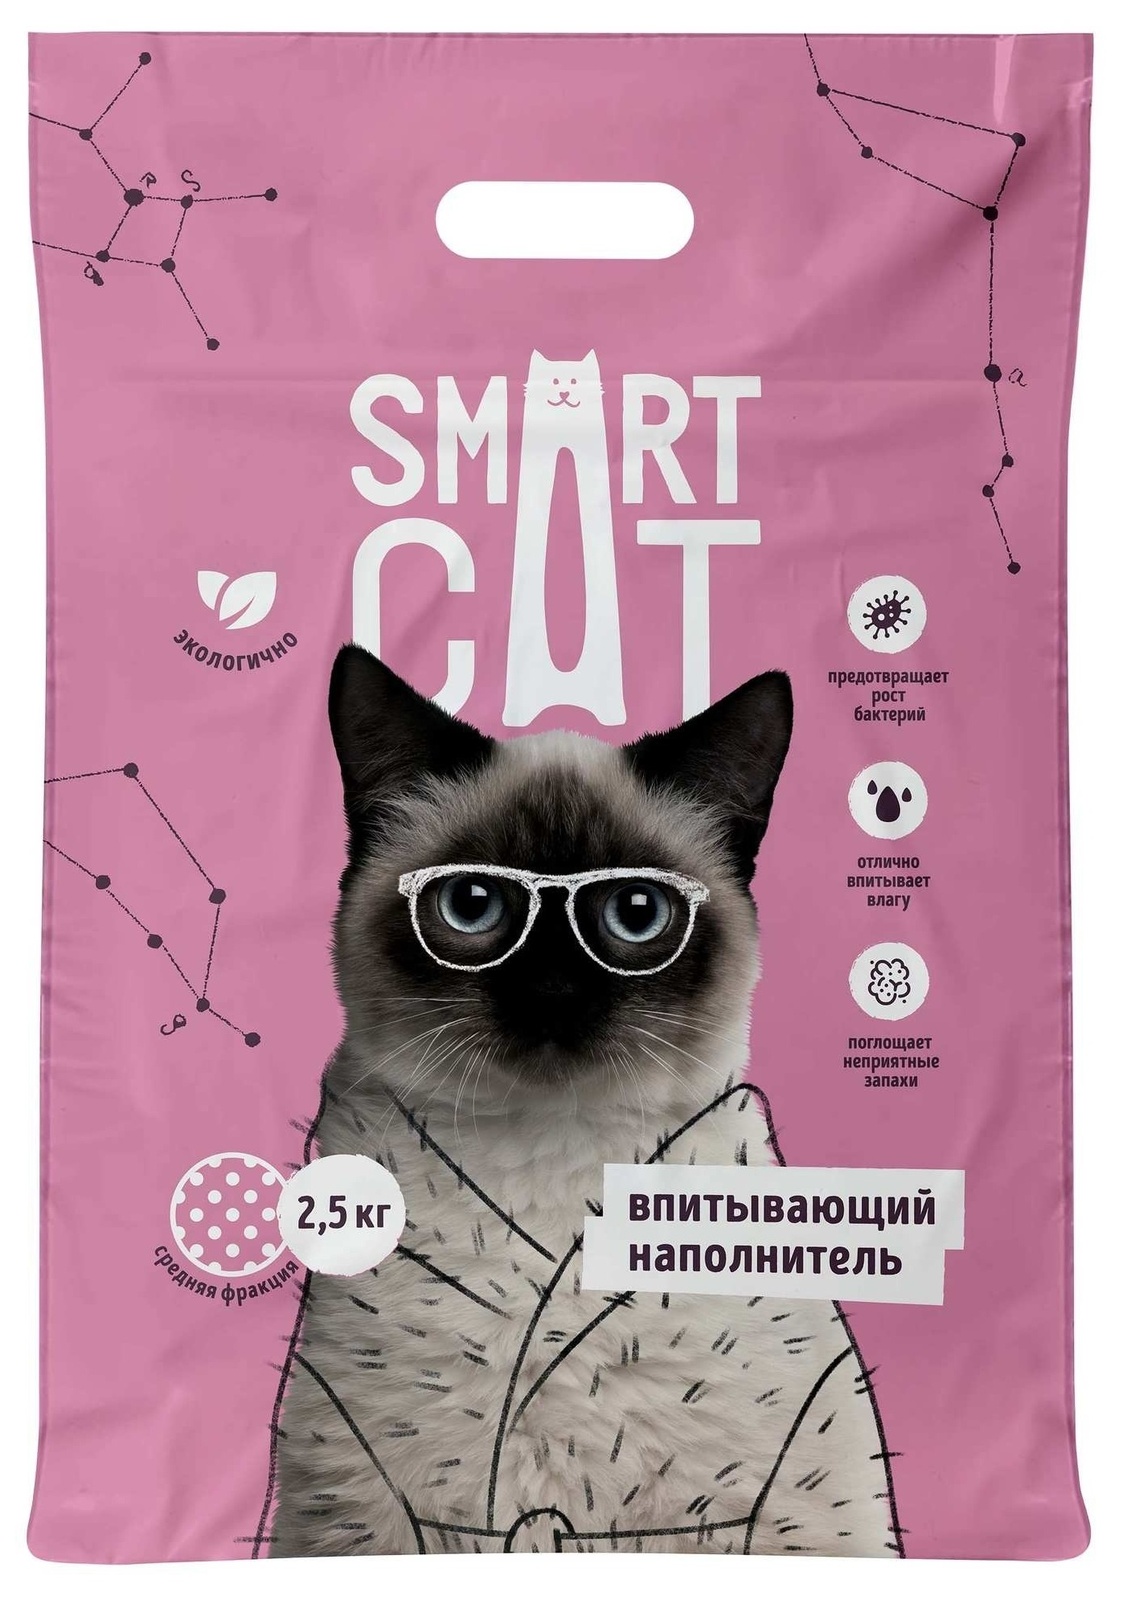 Smart Cat наполнитель Smart Cat наполнитель впитывающий наполнитель, средняя фракция (2,5 кг) smart cat наполнитель smart cat наполнитель комкующийся наполнитель 10 кг